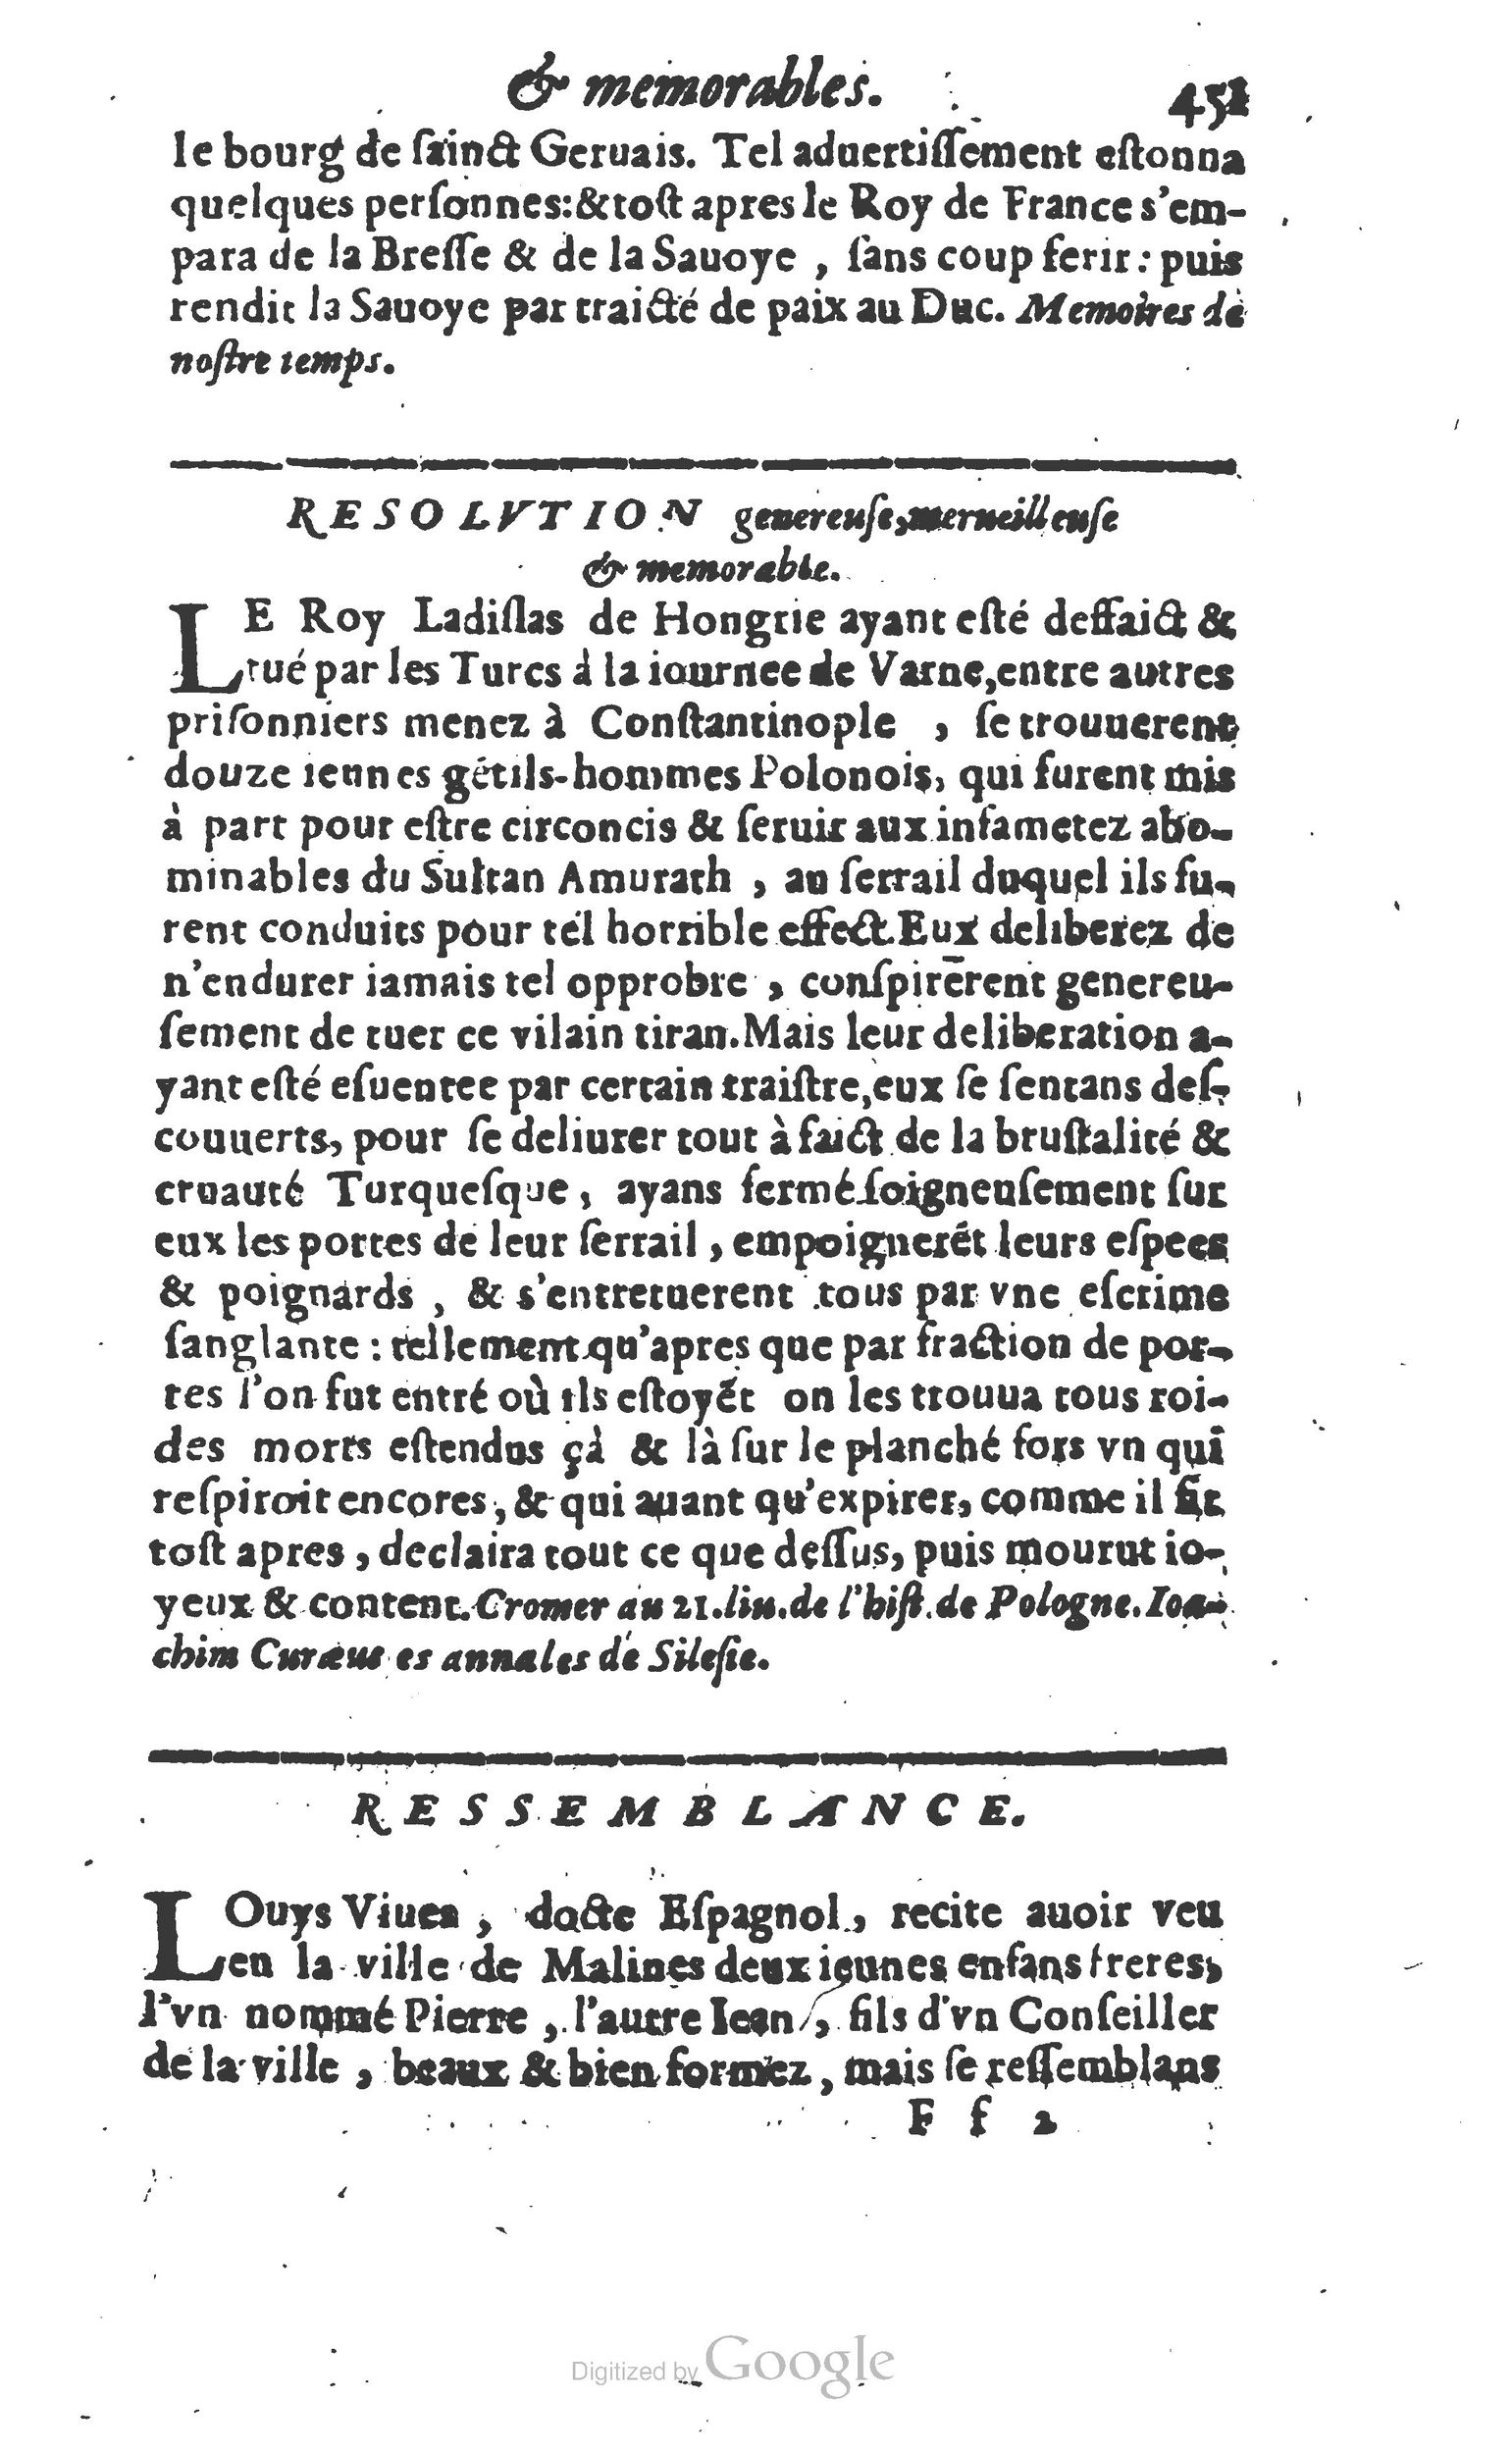 1610 Trésor d’histoires admirables et mémorables de nostre temps Marceau Princeton_Page_0472.jpg